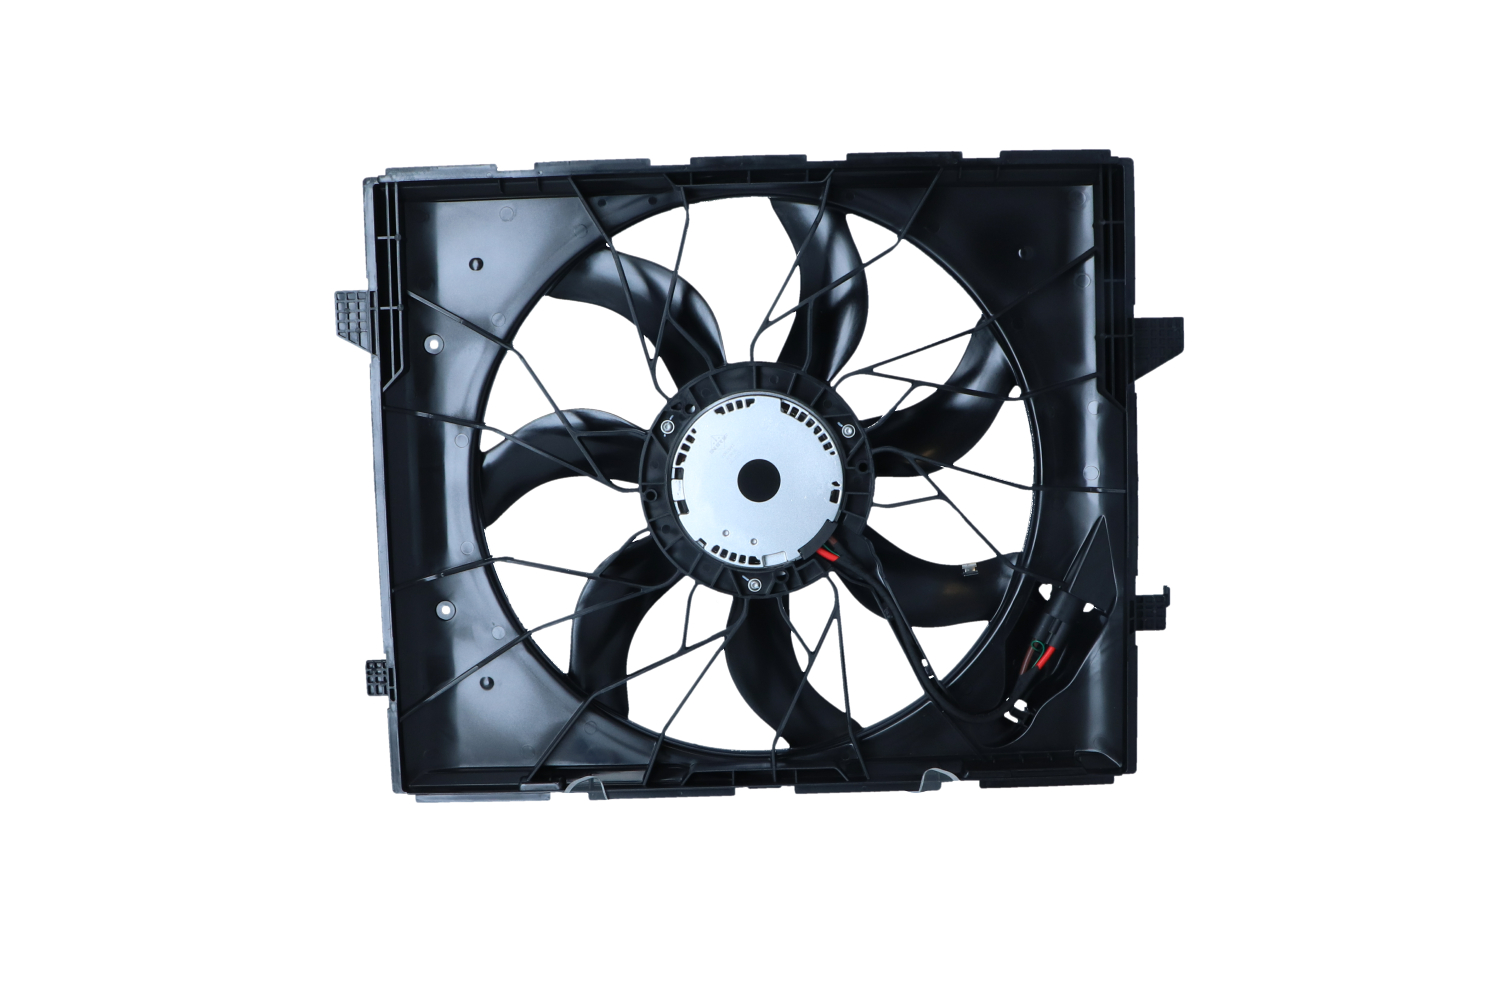 470036 NRF Cooling fan JEEP with radiator fan shroud, Brushless Motor